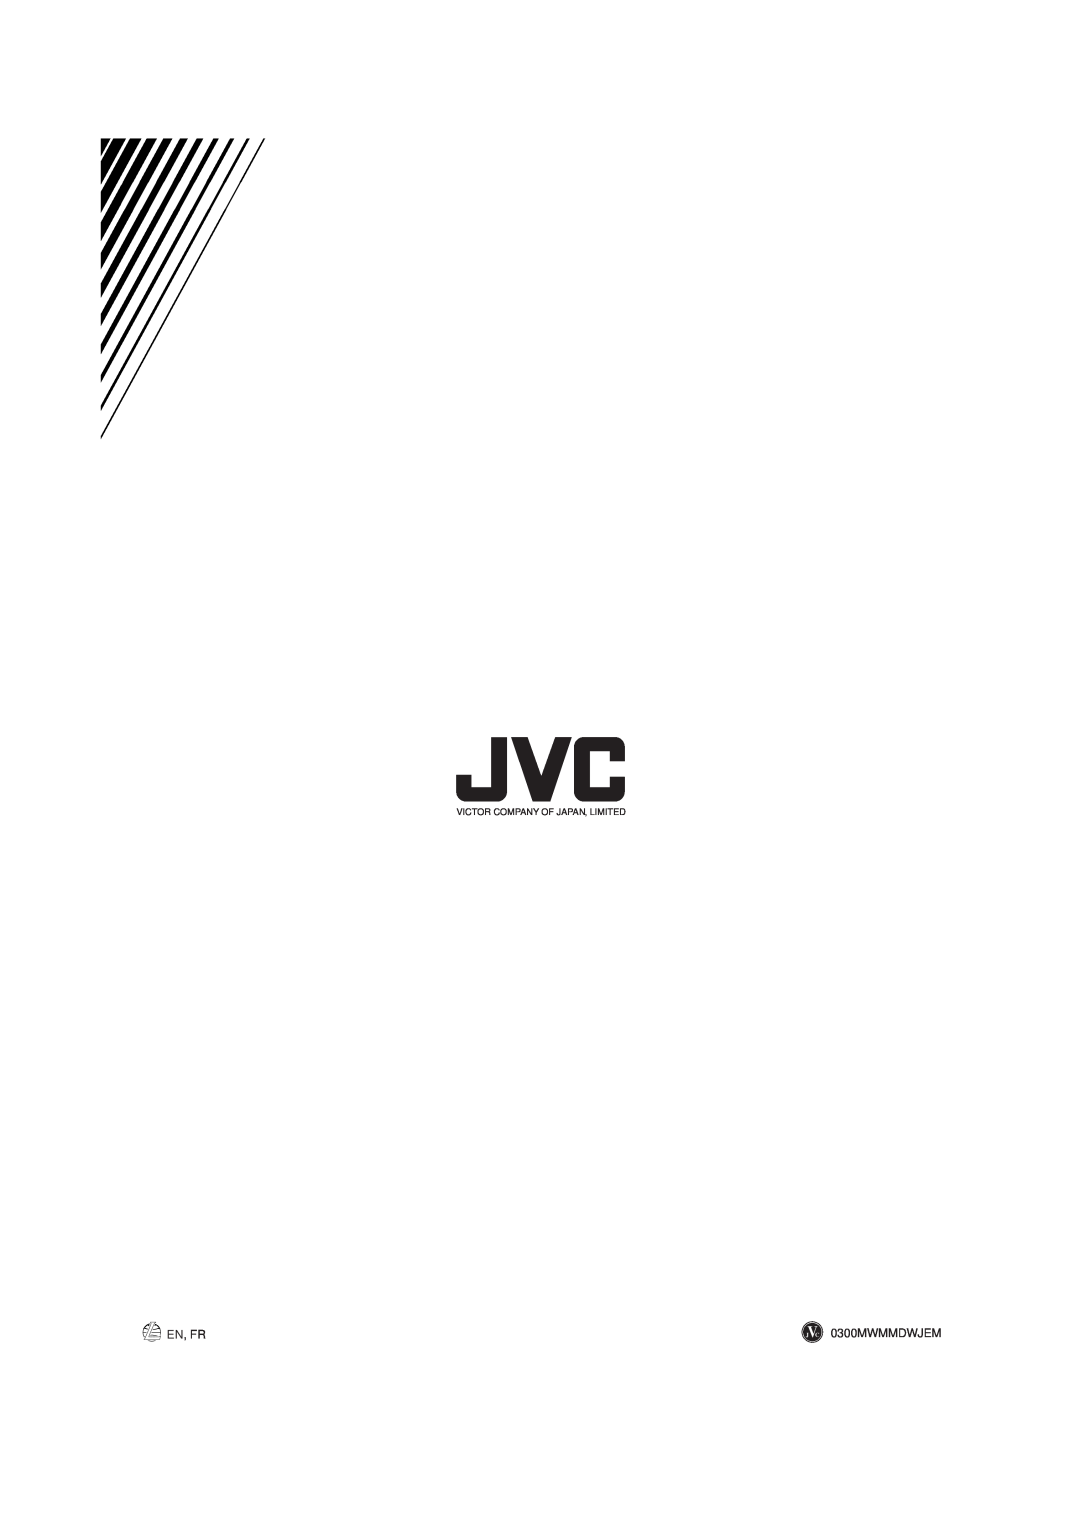 JVC CA-MXJ900, SP-MXJ900 manual En, Fr, 0300MWMMDWJEM, Victor Company Of Japan, Limited 